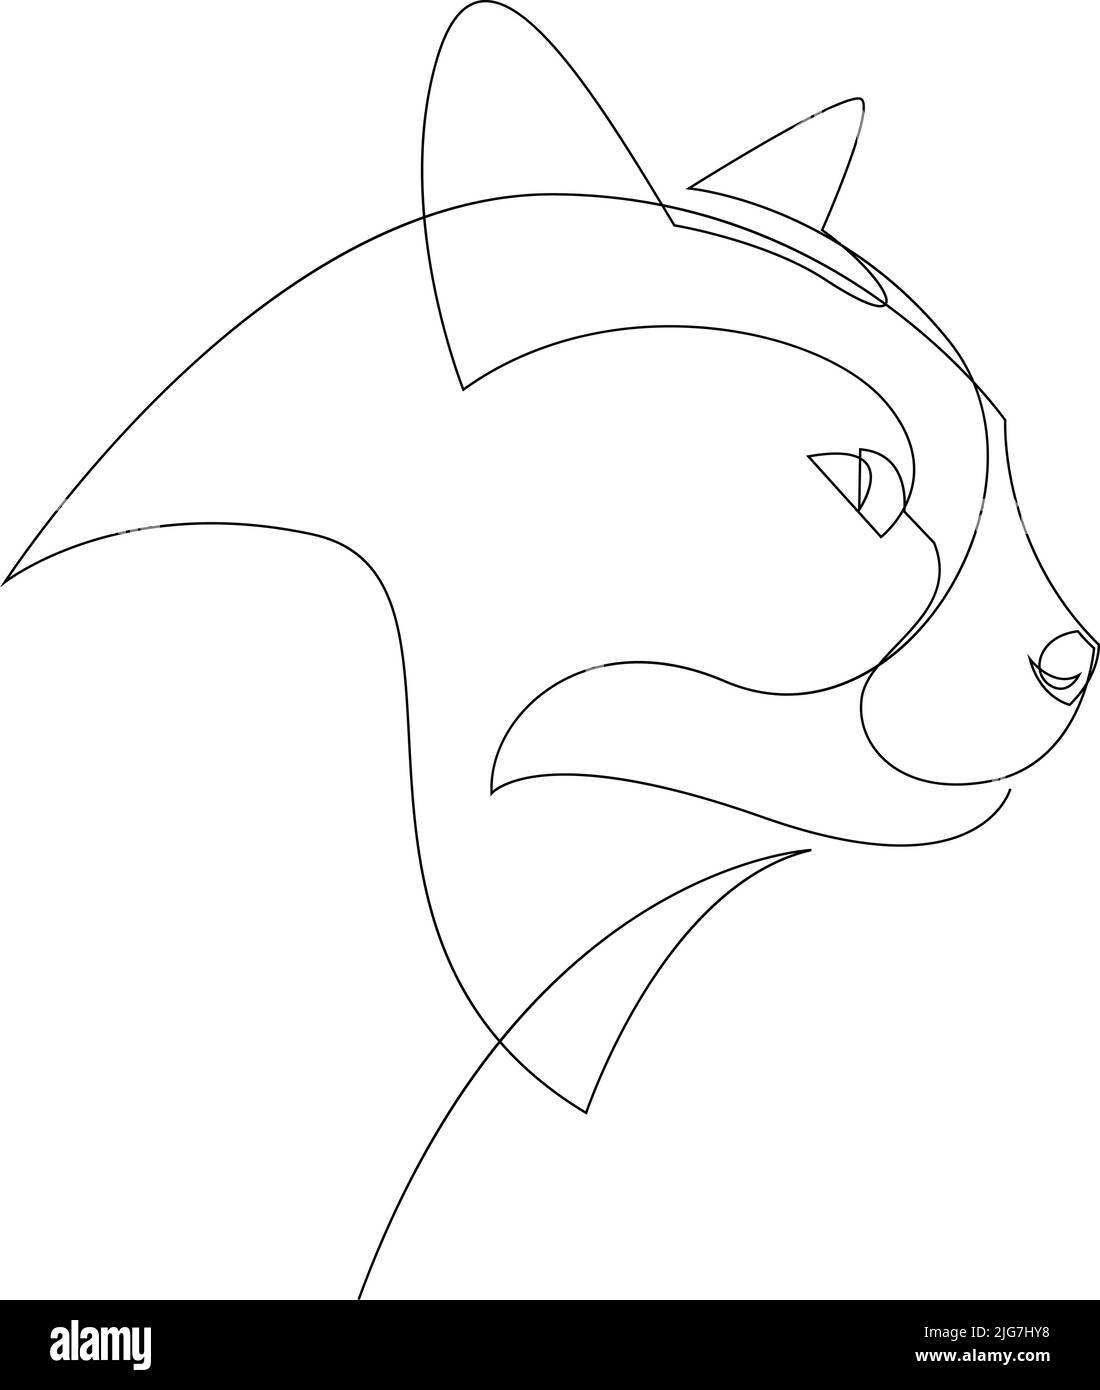 Profil de chat en style de dessin au trait continu. Esquisse linéaire noire minimaliste isolée sur fond blanc. Illustration vectorielle Illustration de Vecteur